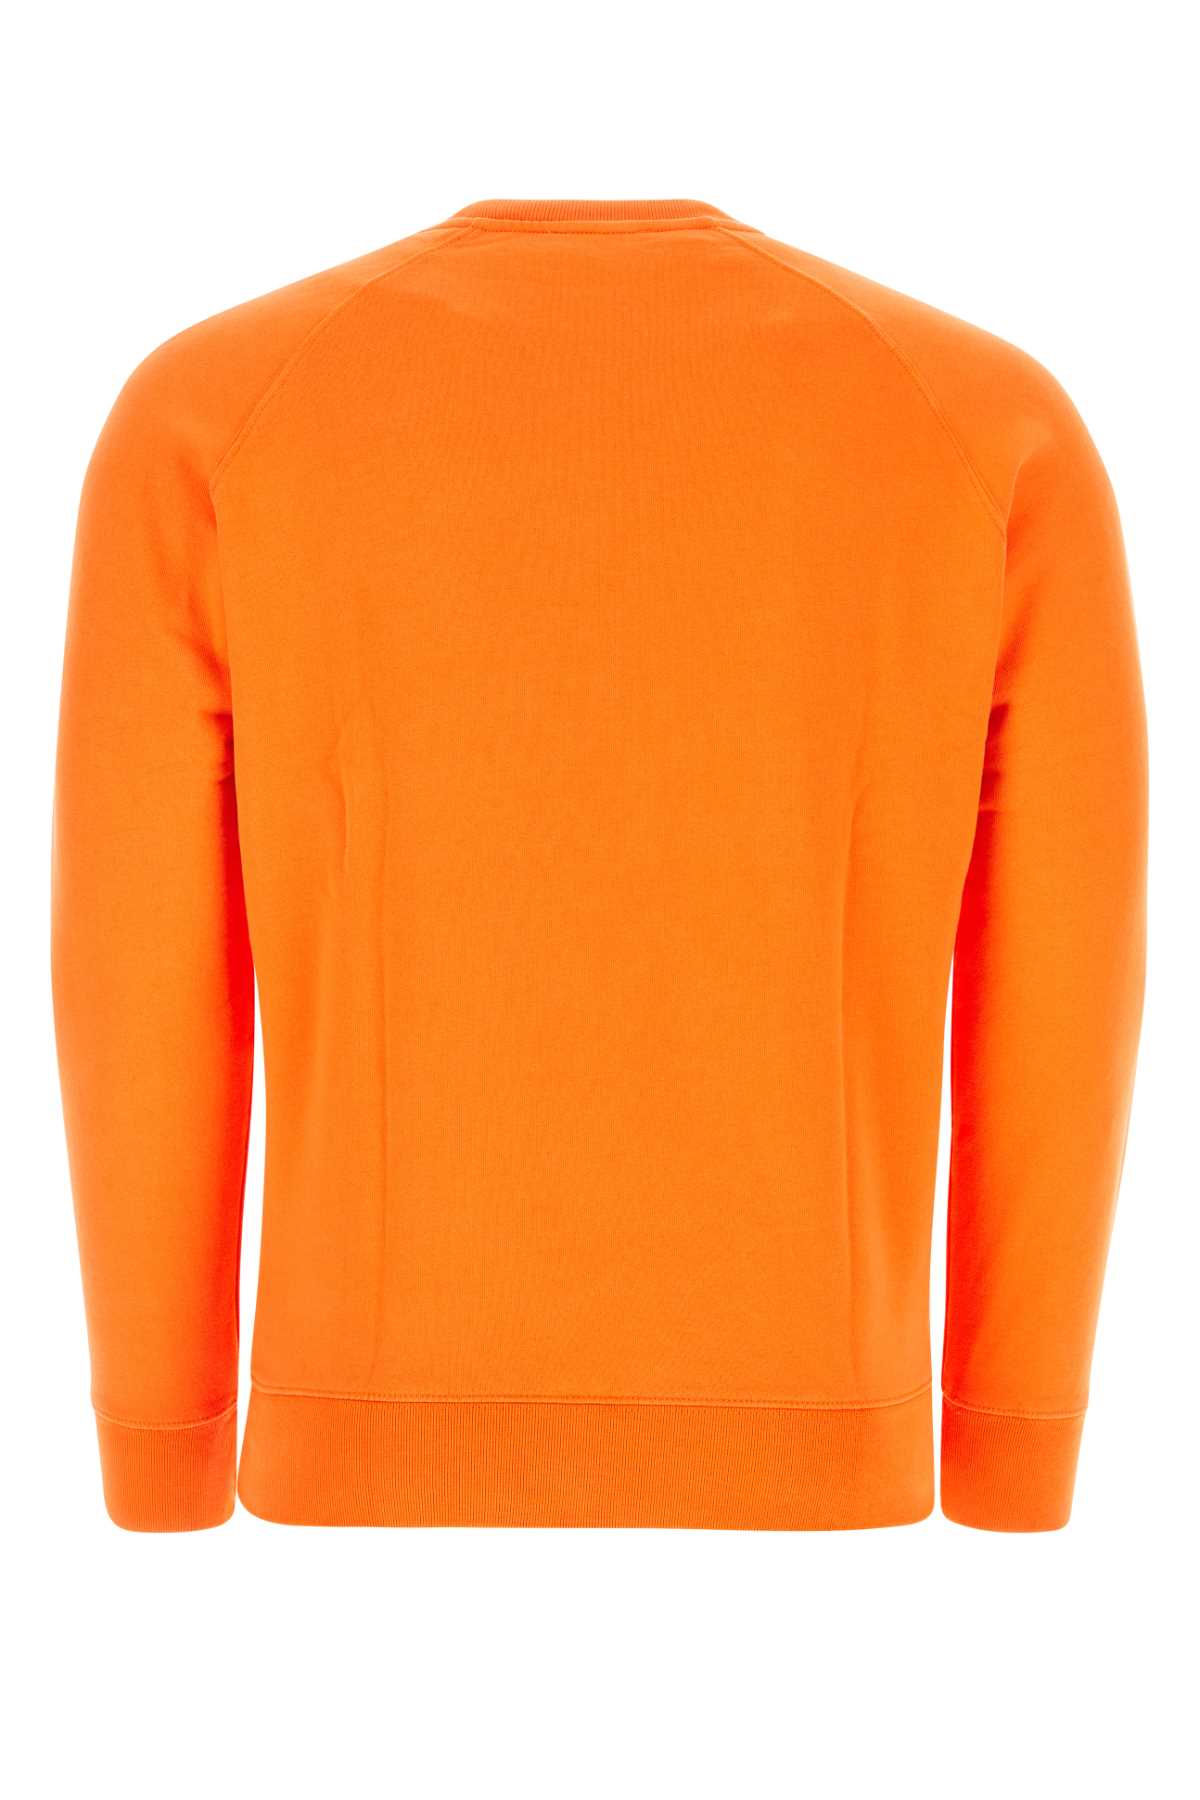 Shop Maison Kitsuné Orange Cotton Sweatshirt In P851